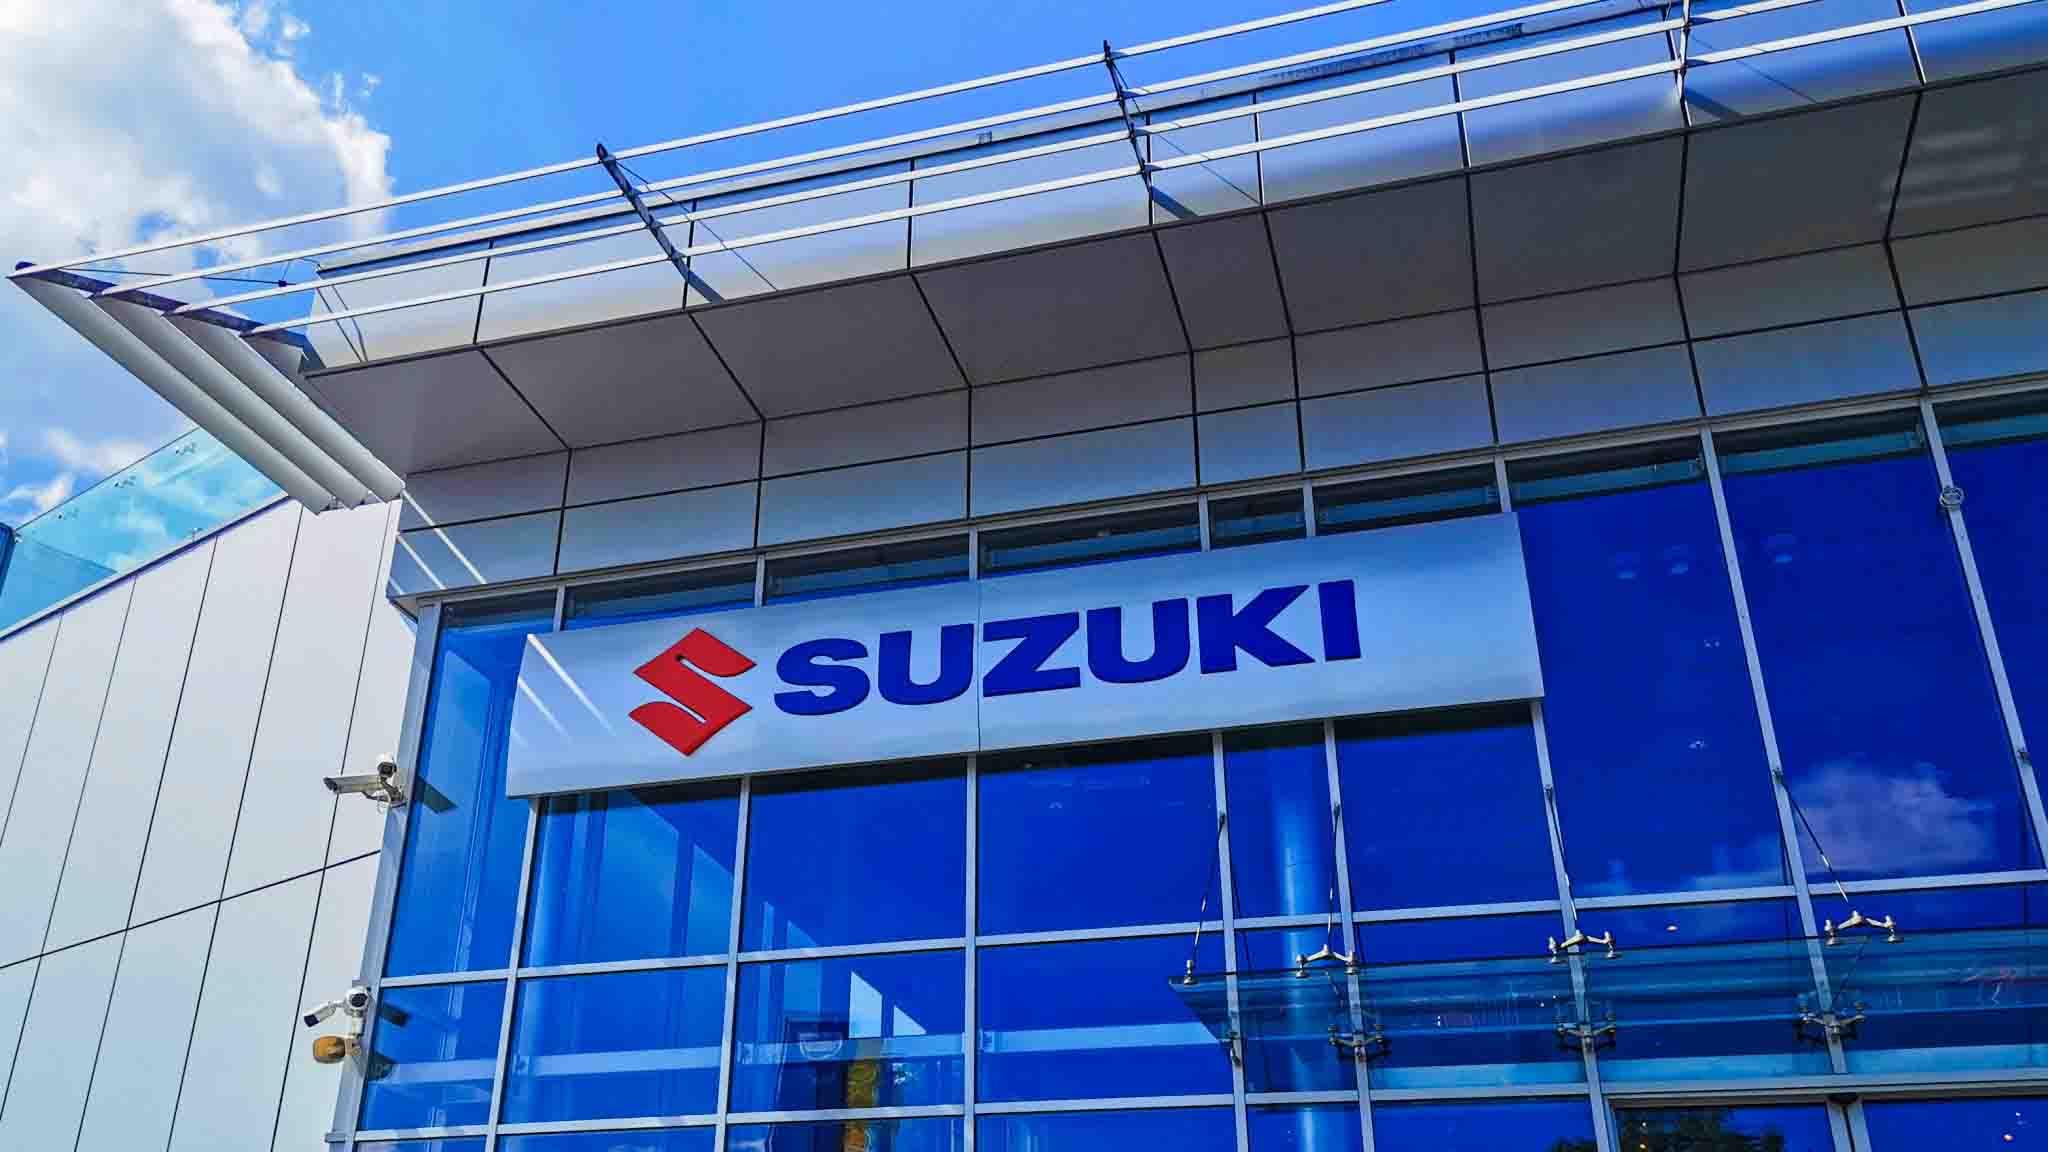 بعد ارتفاعها بأيام.. سوزوكي تُعلن زيادة أسعار سياراتها للمرة الثانية في أغسطس